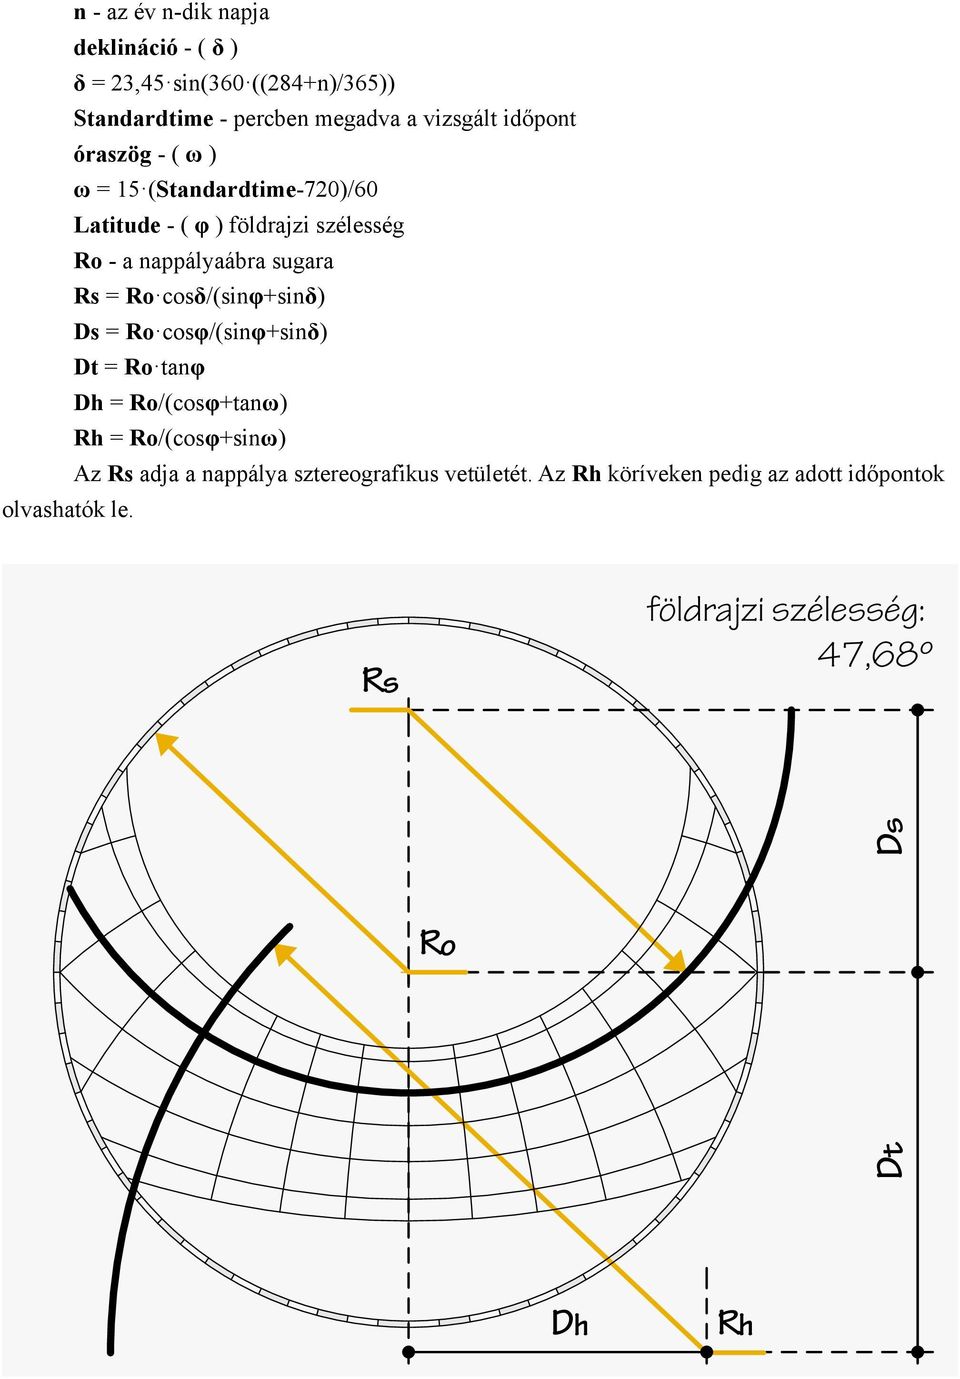 időpont óraszög - ( ω ) ω = 15 (Standardtime-720)/60 Latitude - ( φ ) földrajzi szélesség Ro - a nappályaábra sugara Rs =